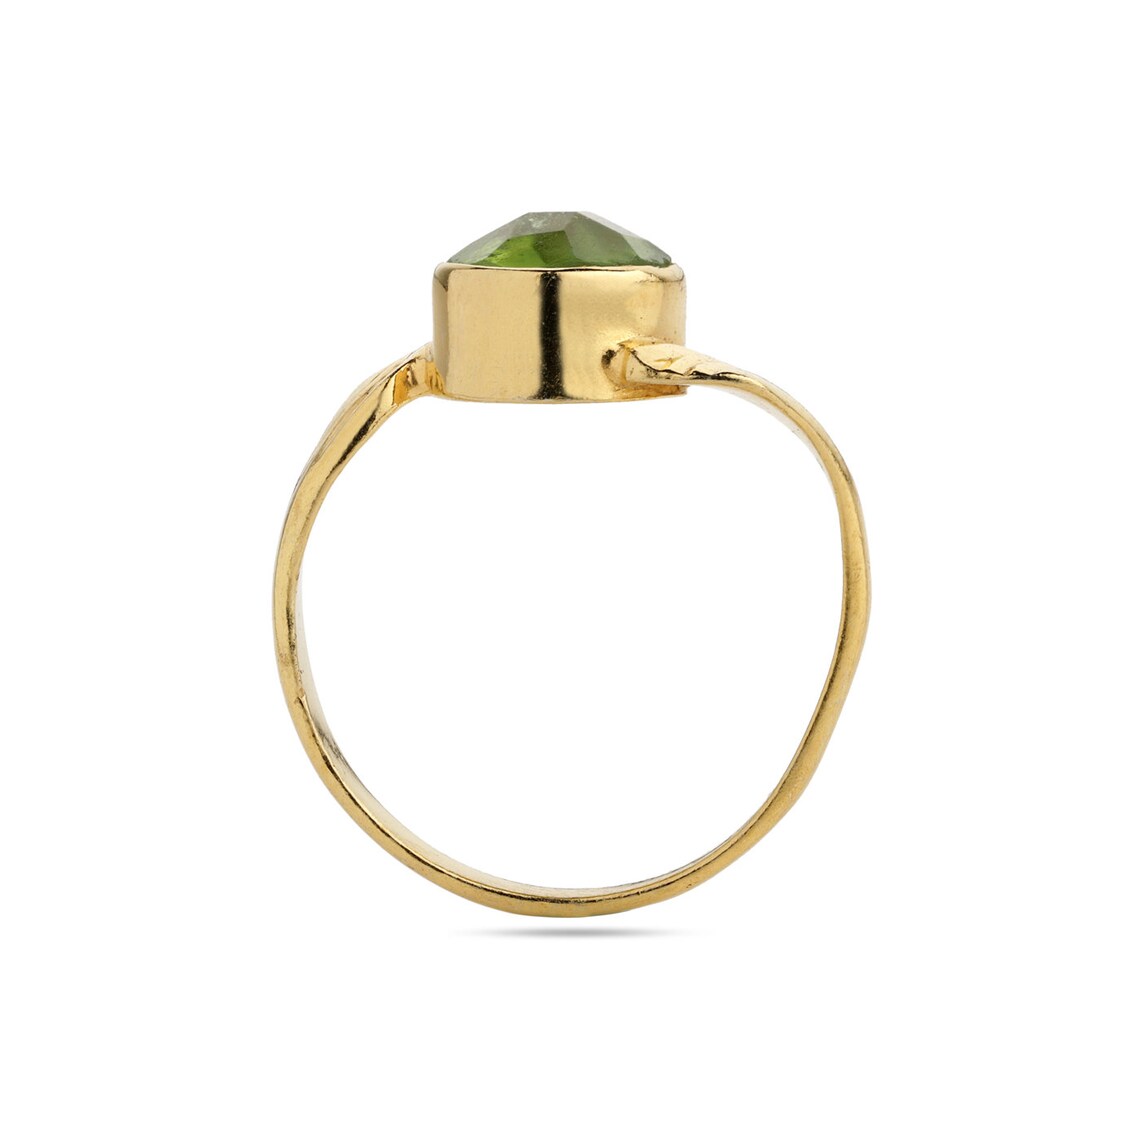 Natural Peridot Gemstone Ring, 925 Silver Ring, Green Color Ring, Gold Ring Jewelry, Peridot Jewelry, Faceted Round Peridot Ring